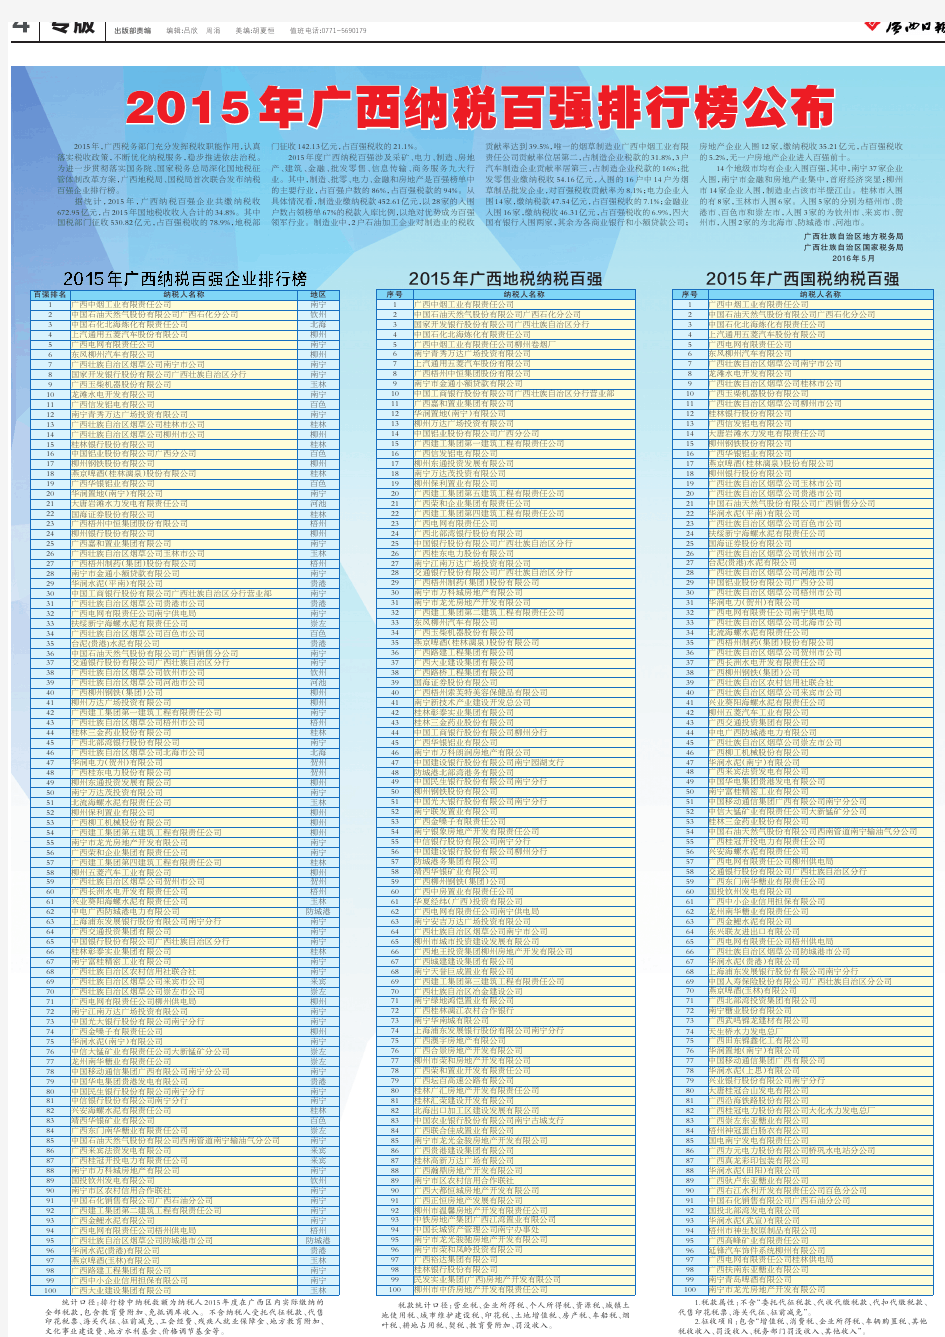 2015 年广西纳税百强排行榜公布